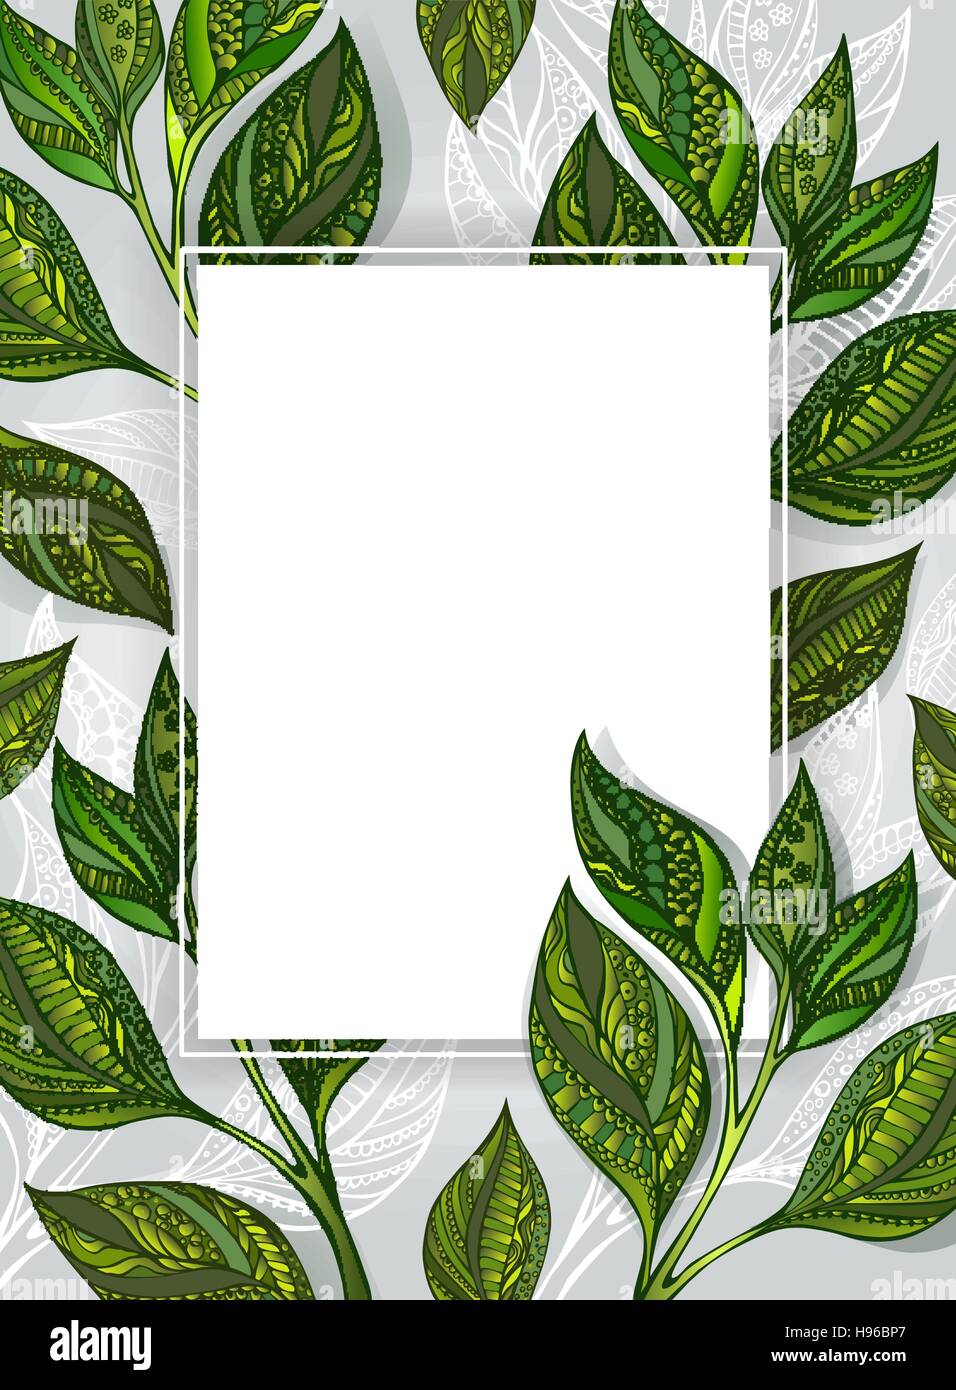 Weiße rechteckige Fahne mit gemusterten, grün und grau Blätter Tee auf einem grauen Hintergrund Textur. Tee-Design. Stock Vektor